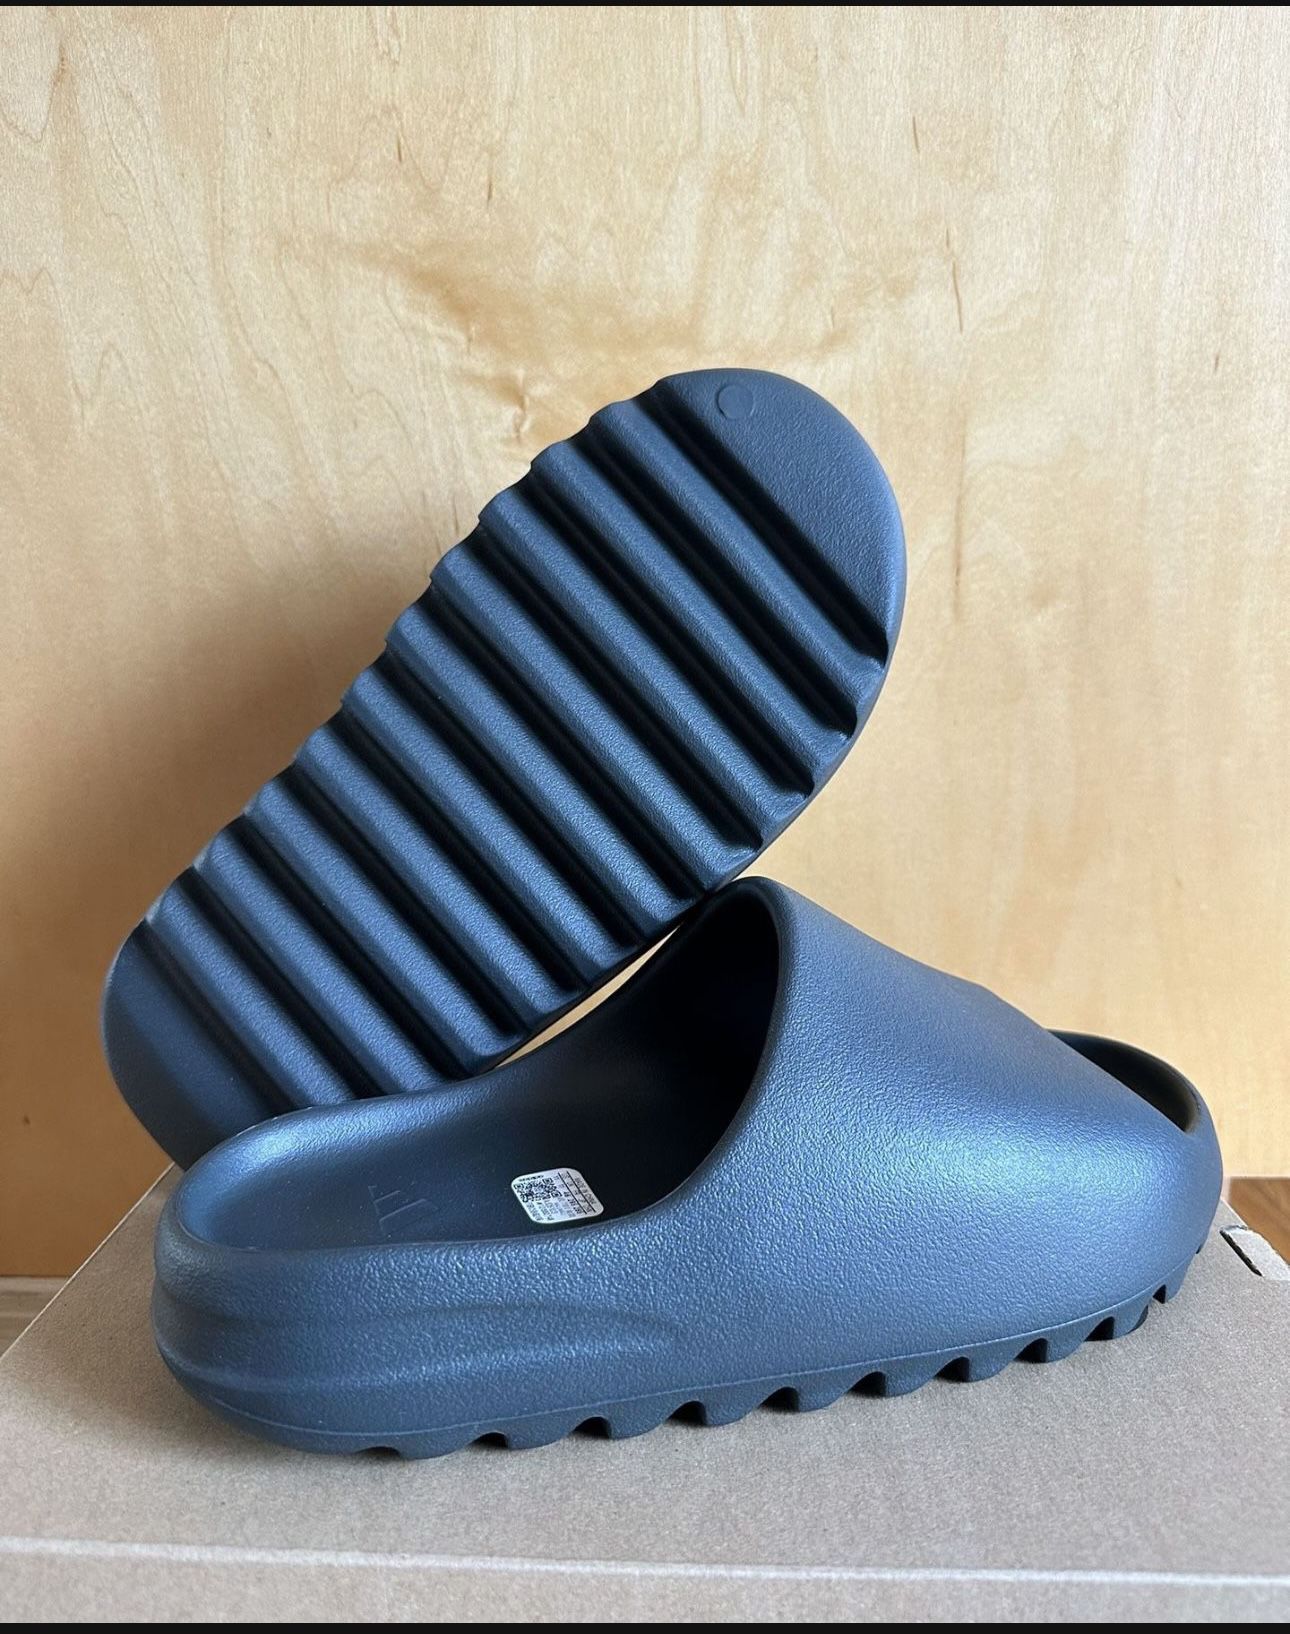 Adidas Yeezy Slide Dark Onyx Size 11 ID5103 Brand New